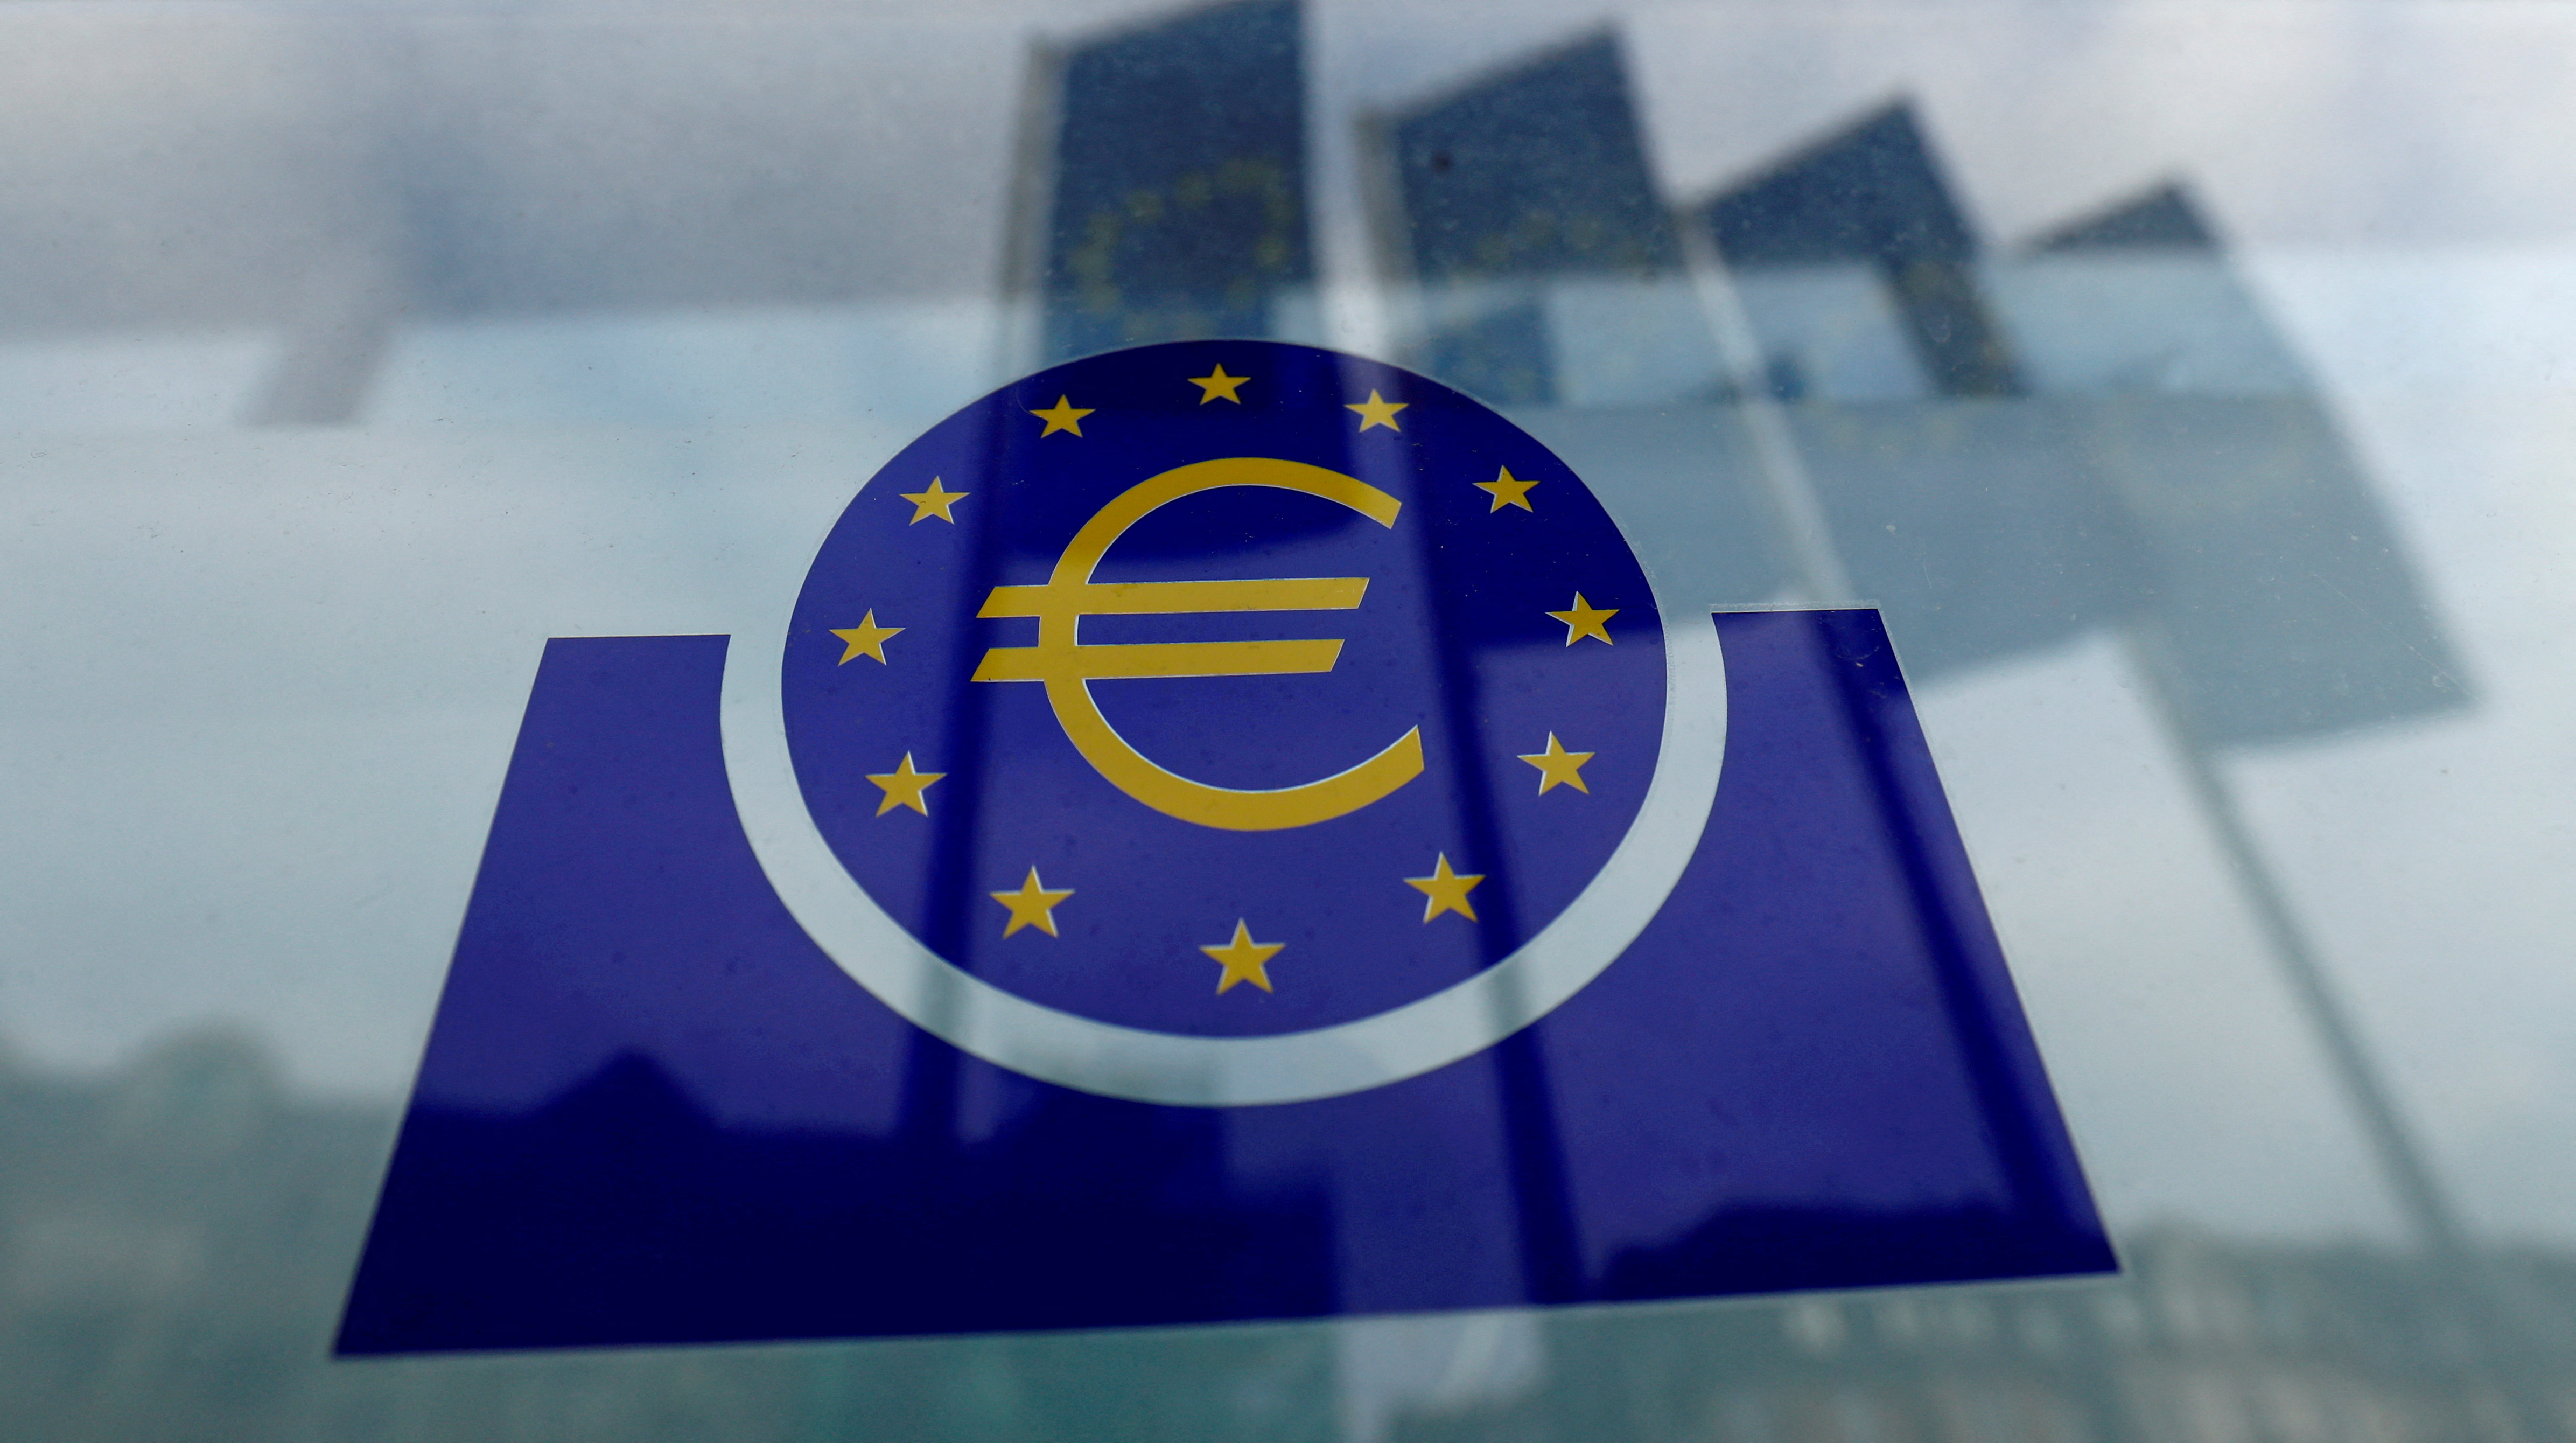 La zone euro officiellement en récession d'après les derniers chiffres Eurostat